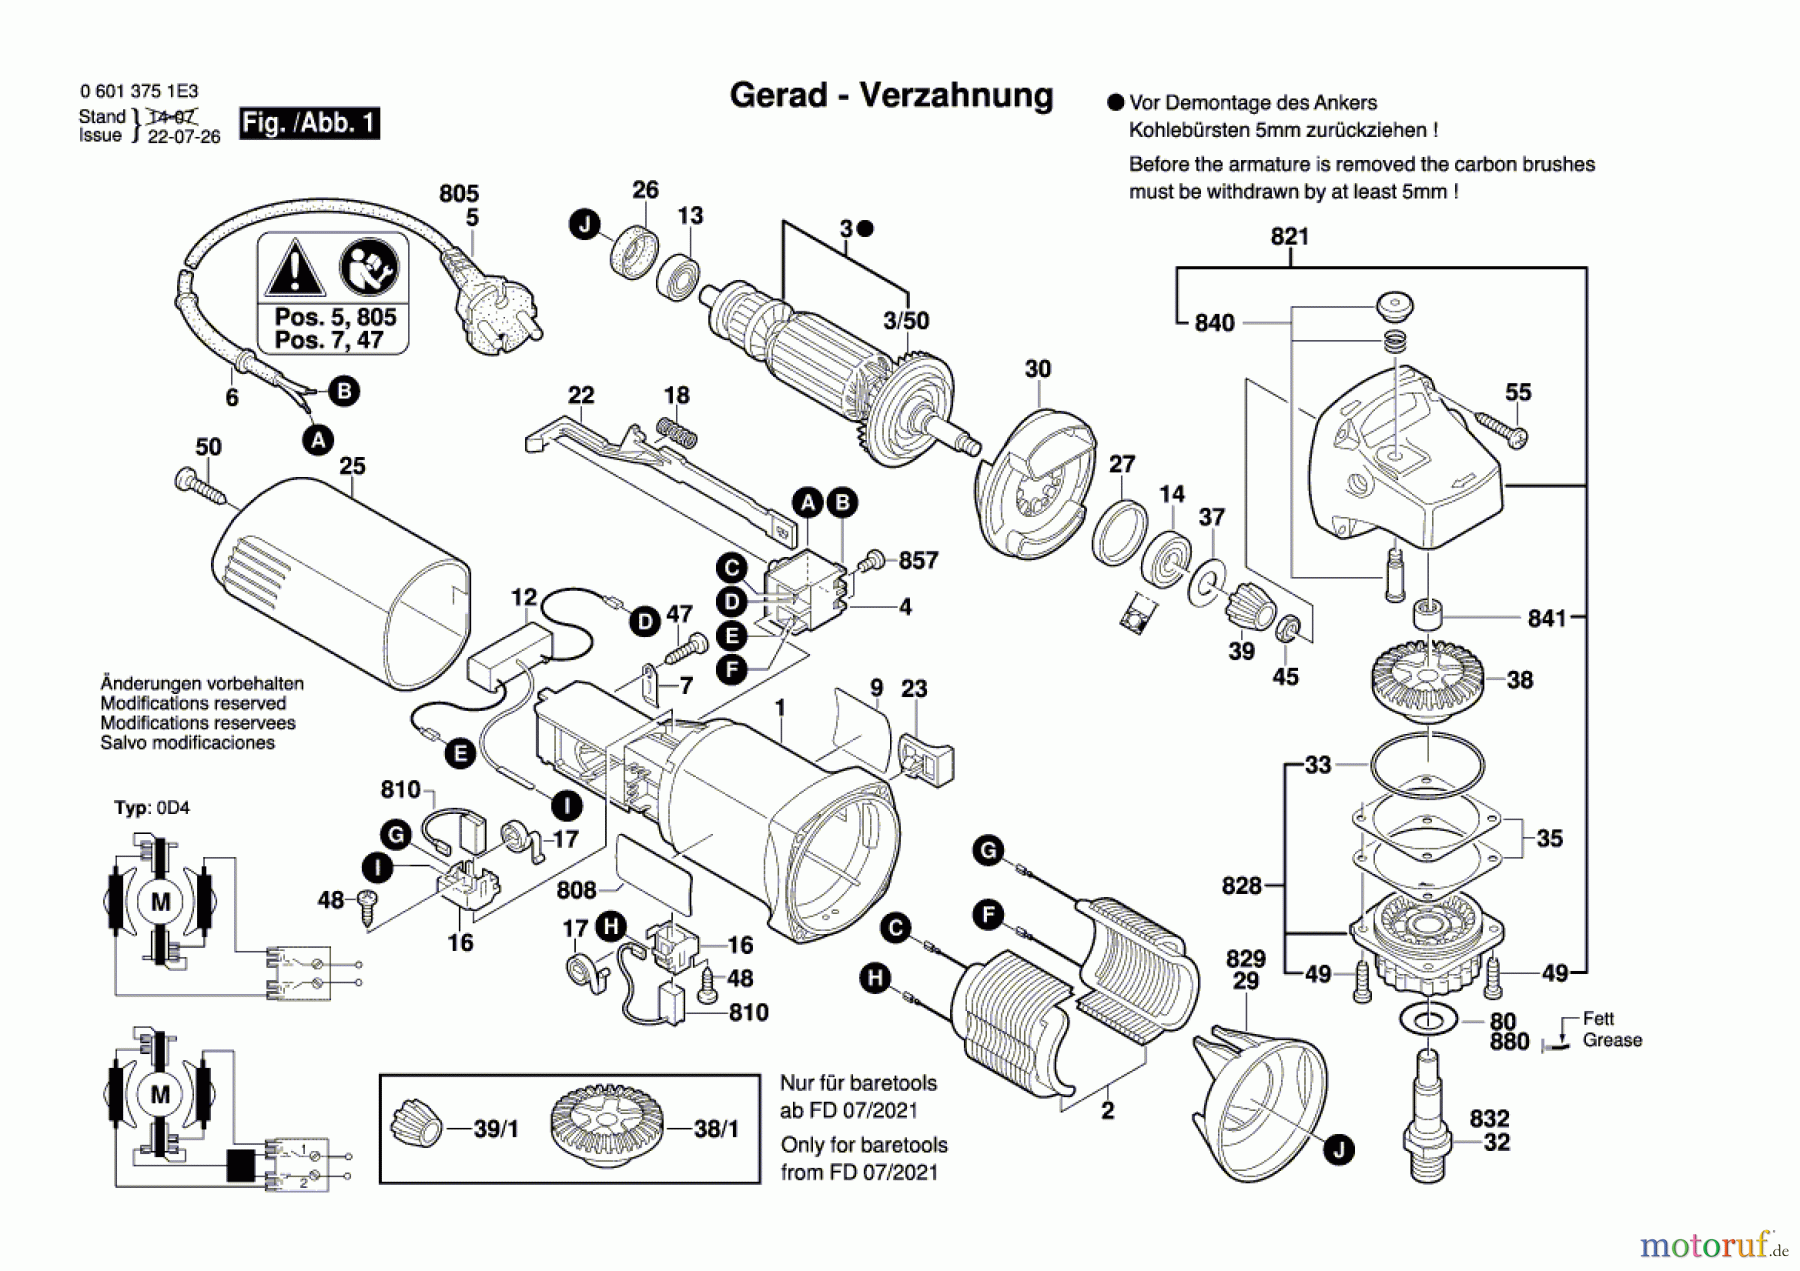  Bosch Werkzeug Winkelschleifer GWS 6-125 Seite 1